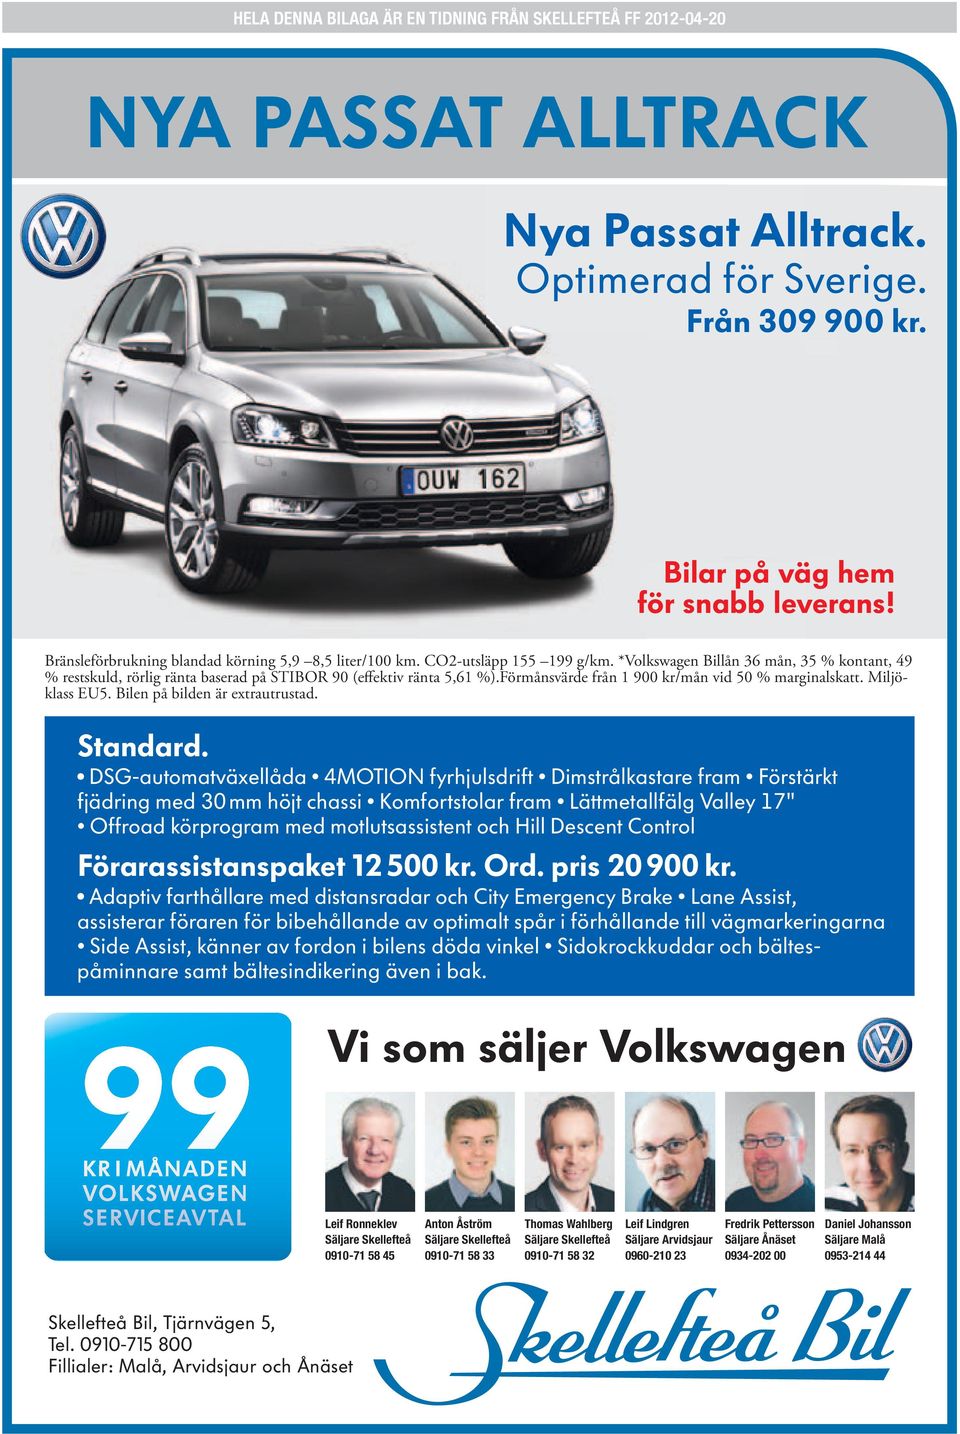 *Volkswagen Billån 36 mån, 35 % kontant, 49 Bränsleförbrukning blandad körning 5,9 8,5 liter/100 km. CO2-utsläpp 155 199 g/km.